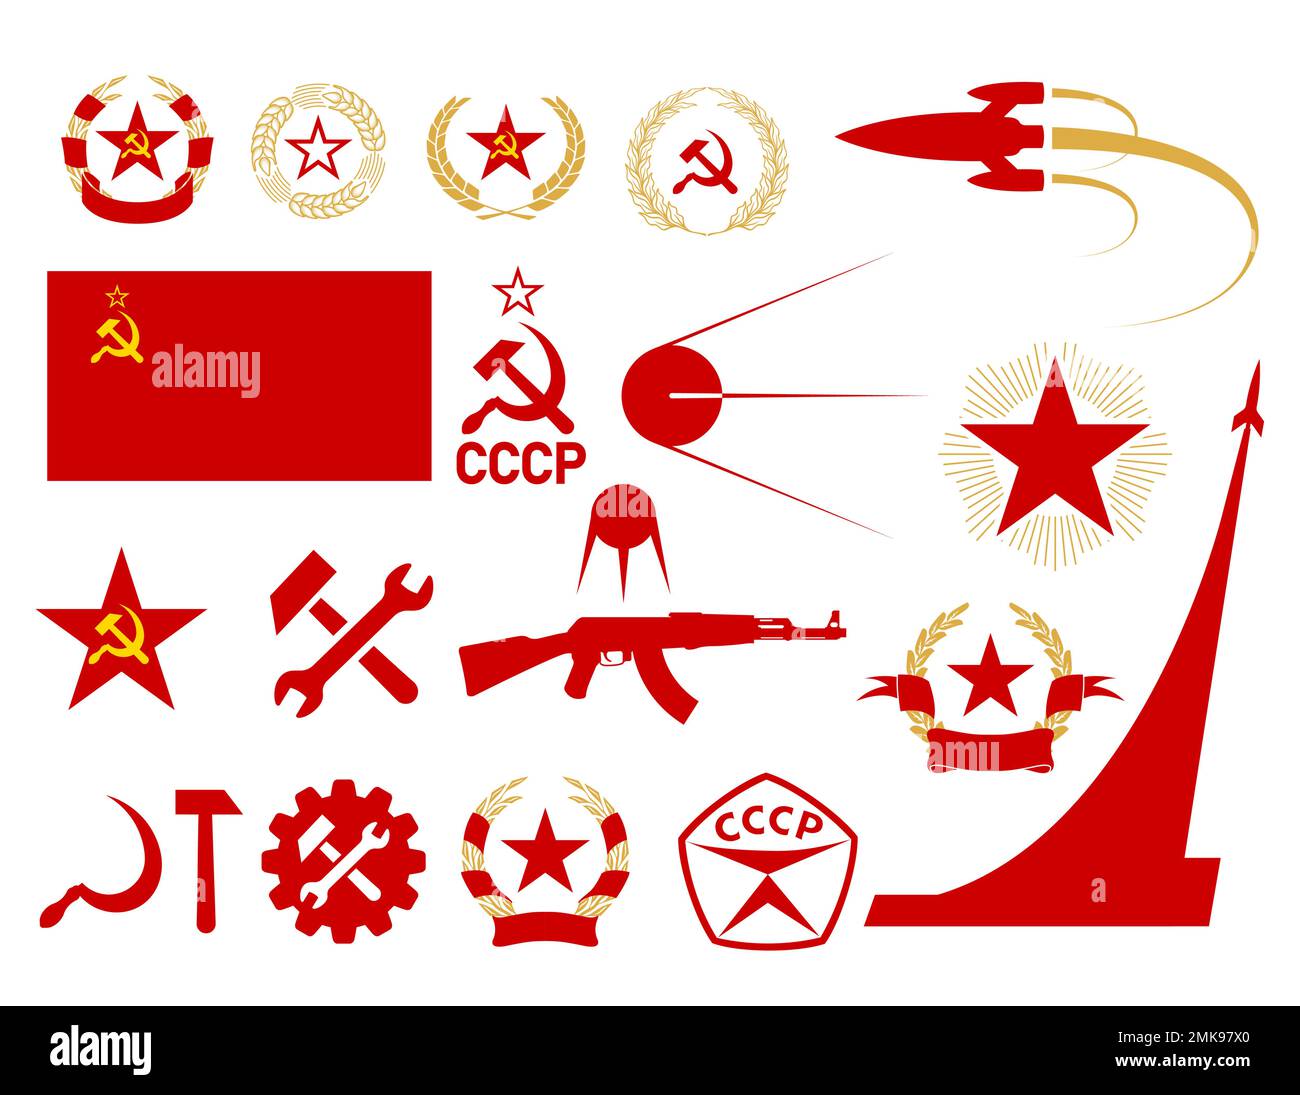 Simbolo dell'URSS, insieme di icone del comunismo e del socialismo, emblemi sovietici, stella, martello e falce, bandiera e stella dell'URSS, corona di grano e alloro, spacco Illustrazione Vettoriale